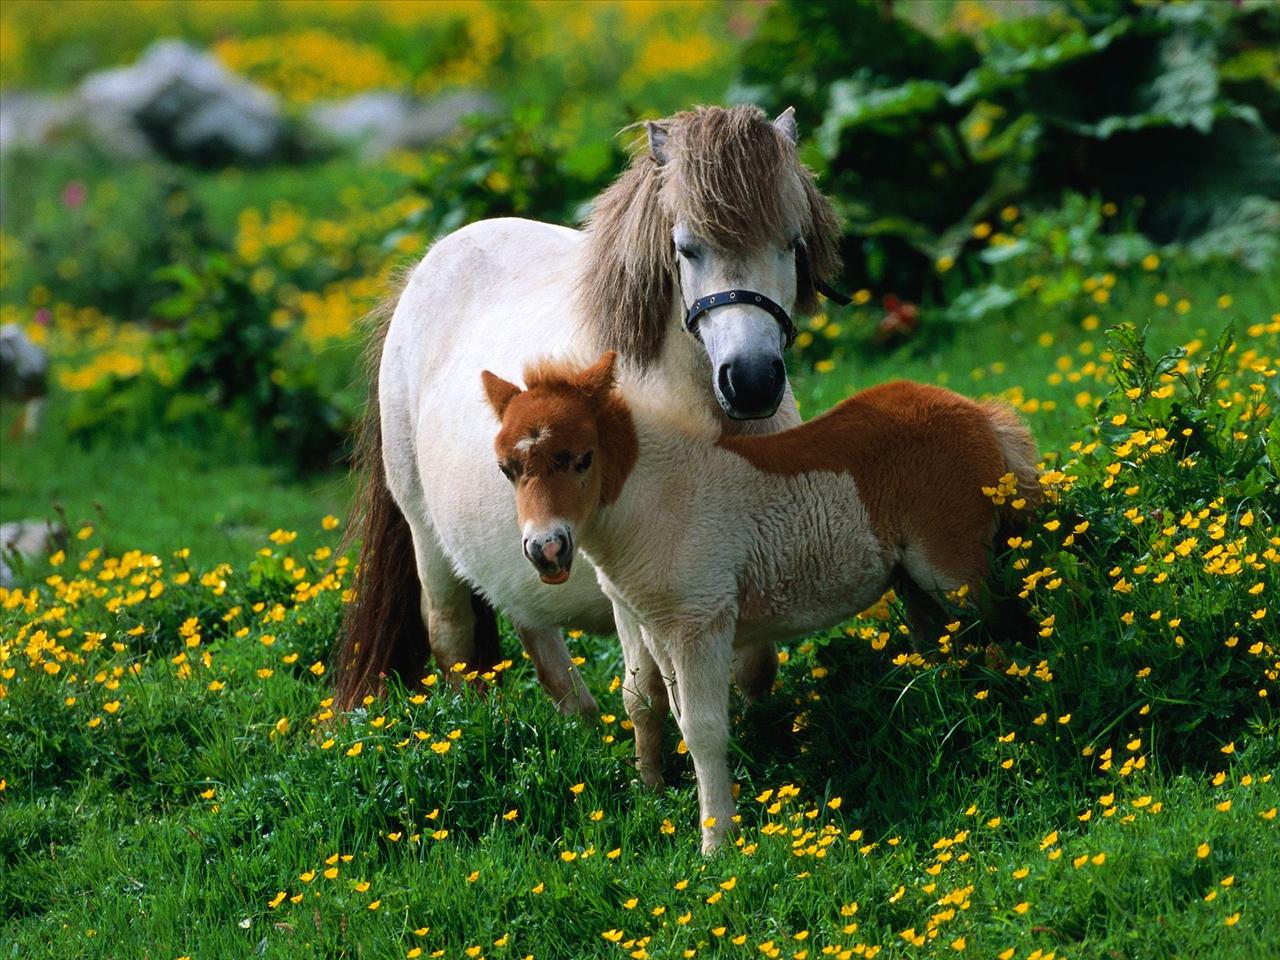 Konie - 1Shetland Pony With Foal.jpg